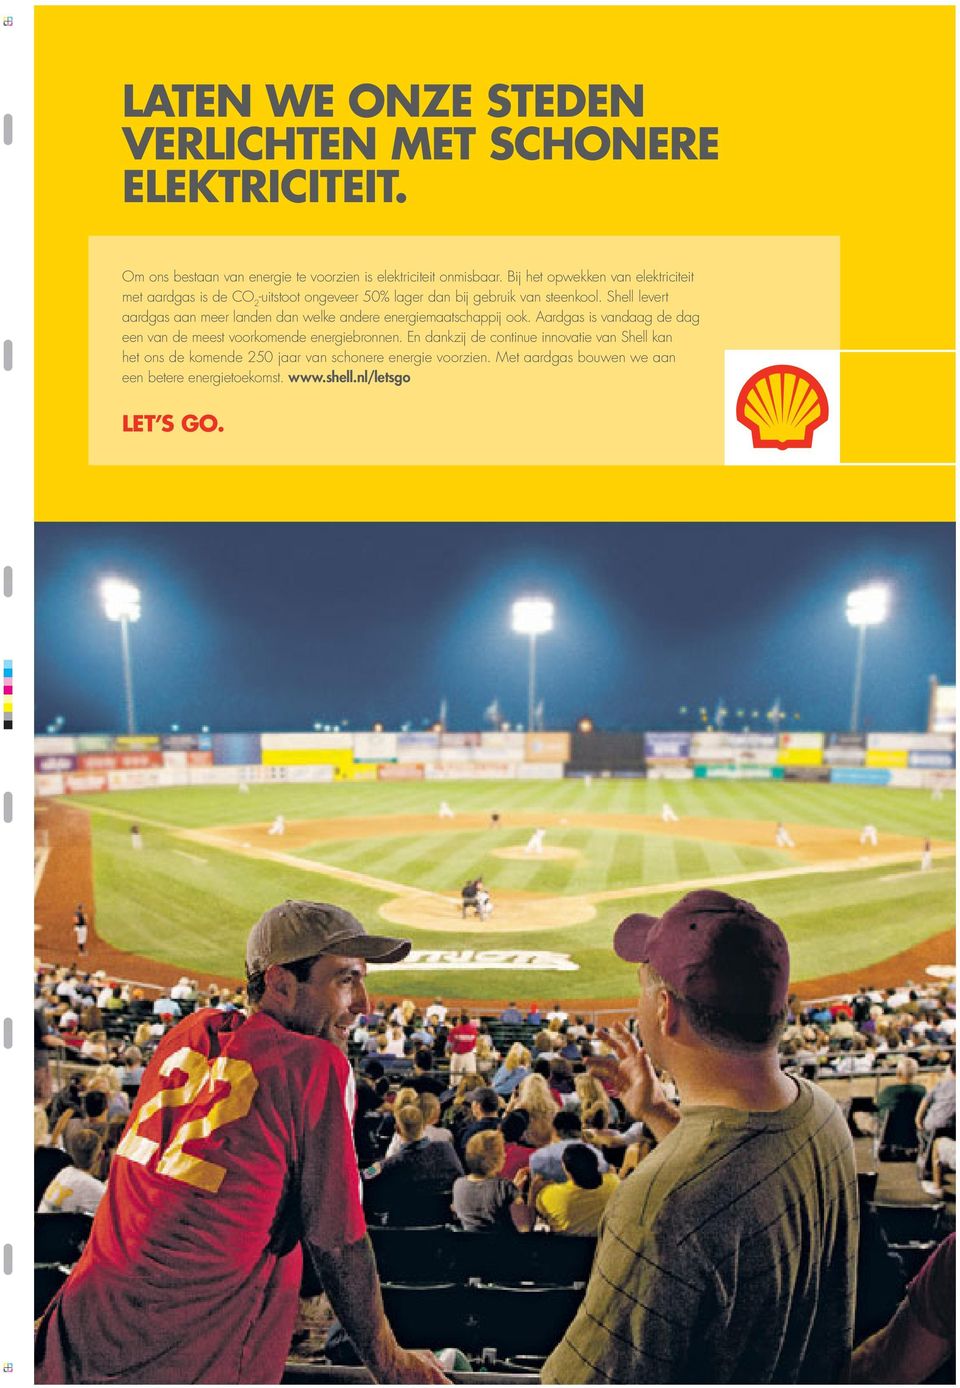 Shell levert aardgas aan meer landen dan welke andere energiemaatschappij ook.